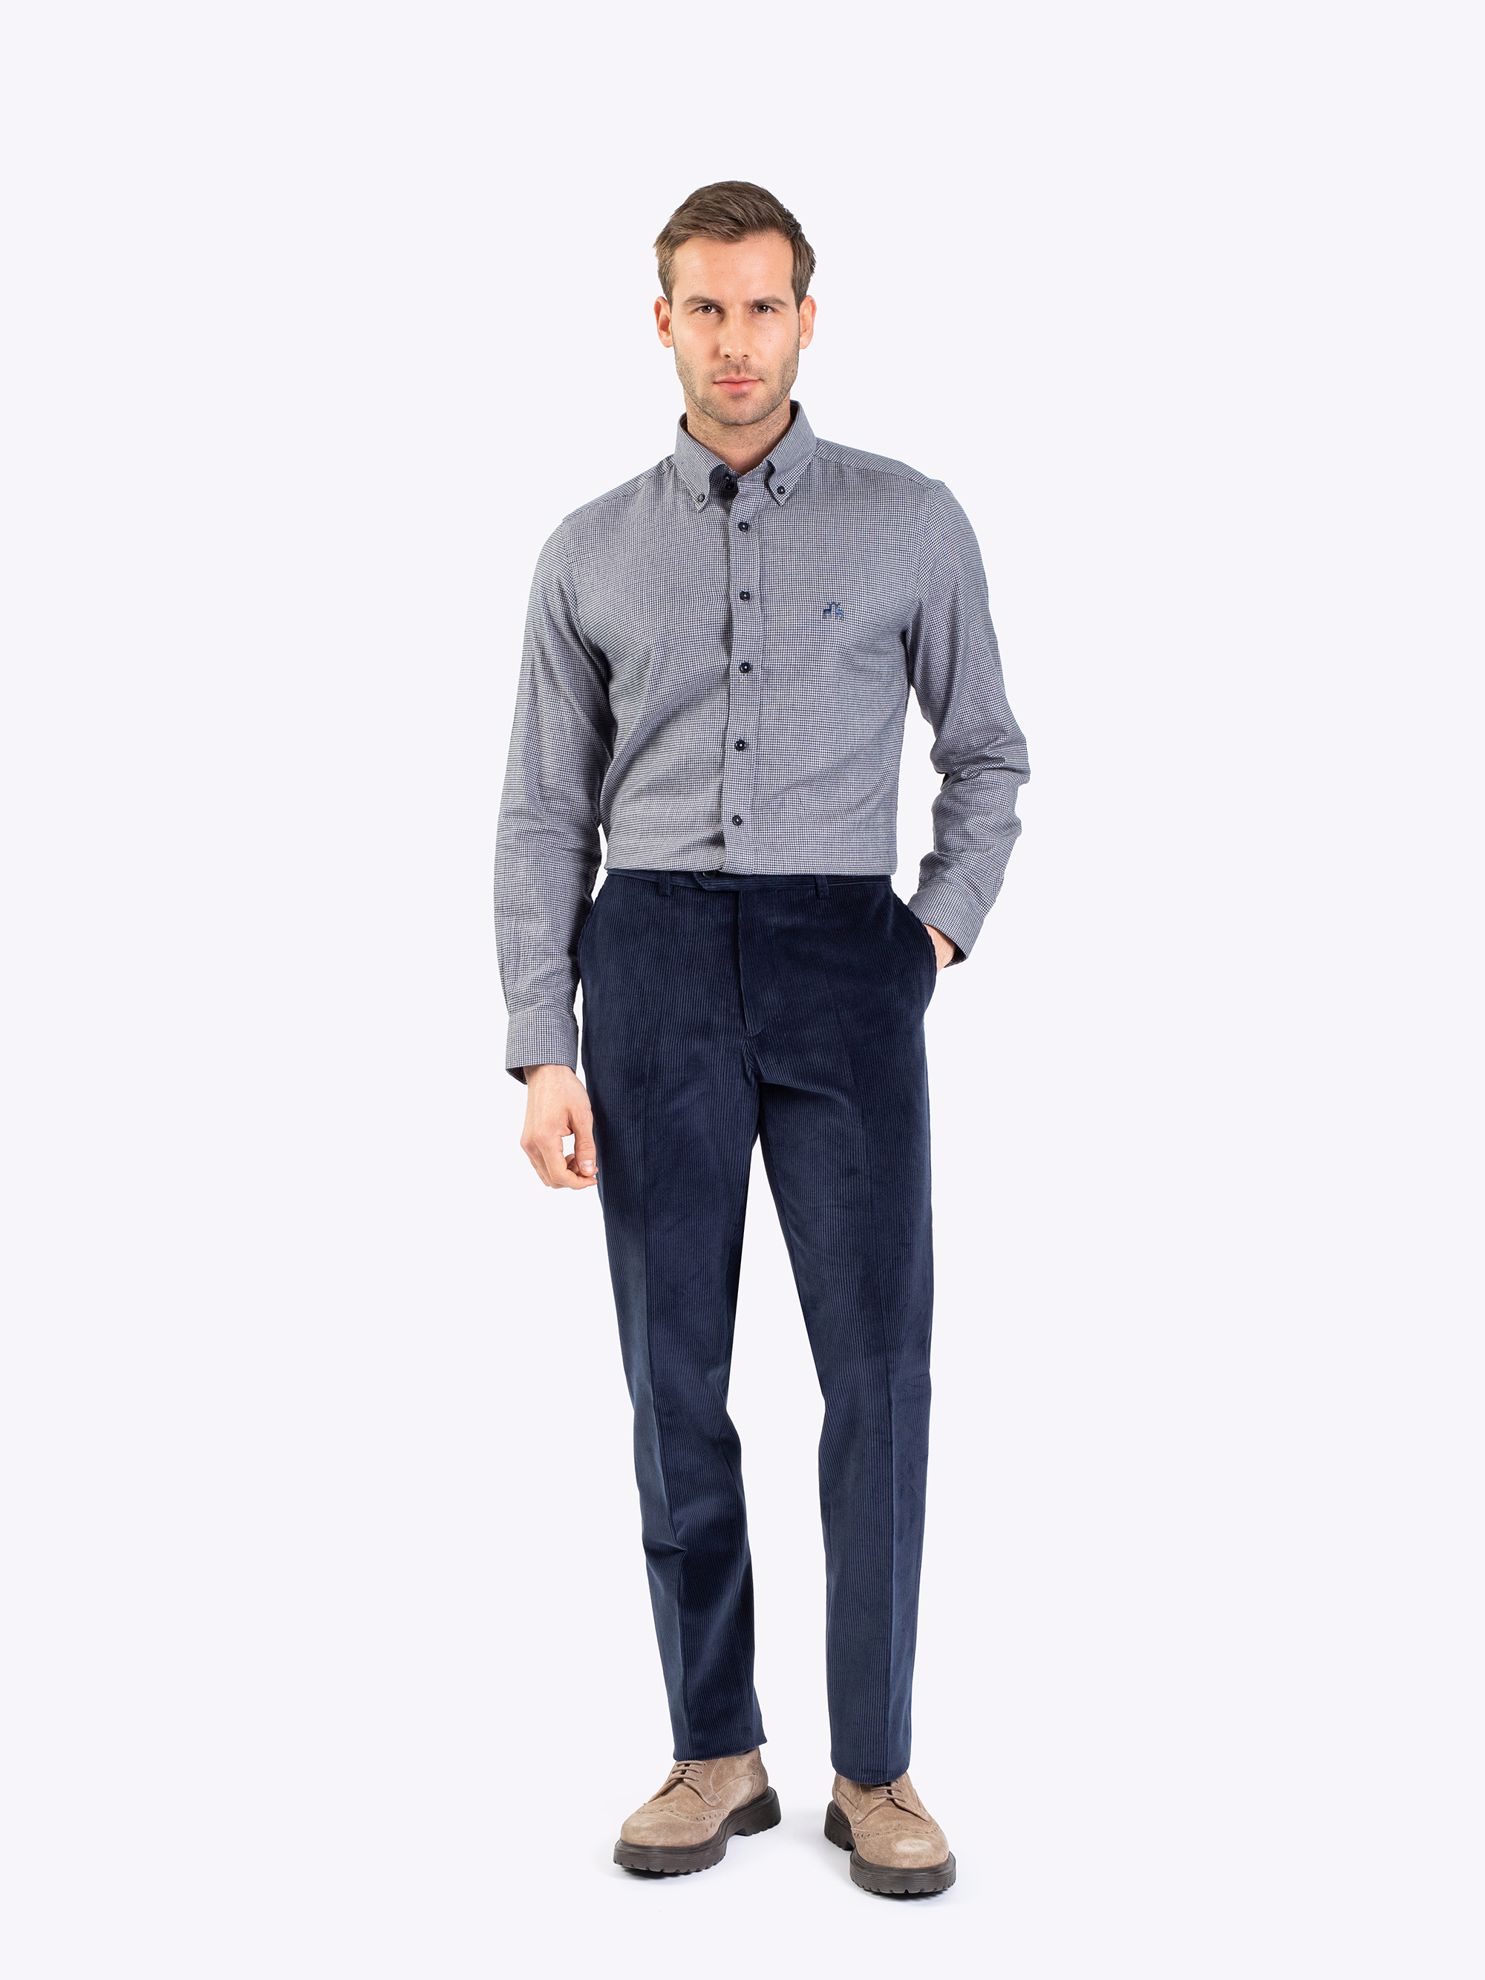 Karaca Erkek 6 Drop Pantolon-Açık Lacivert. ürün görseli